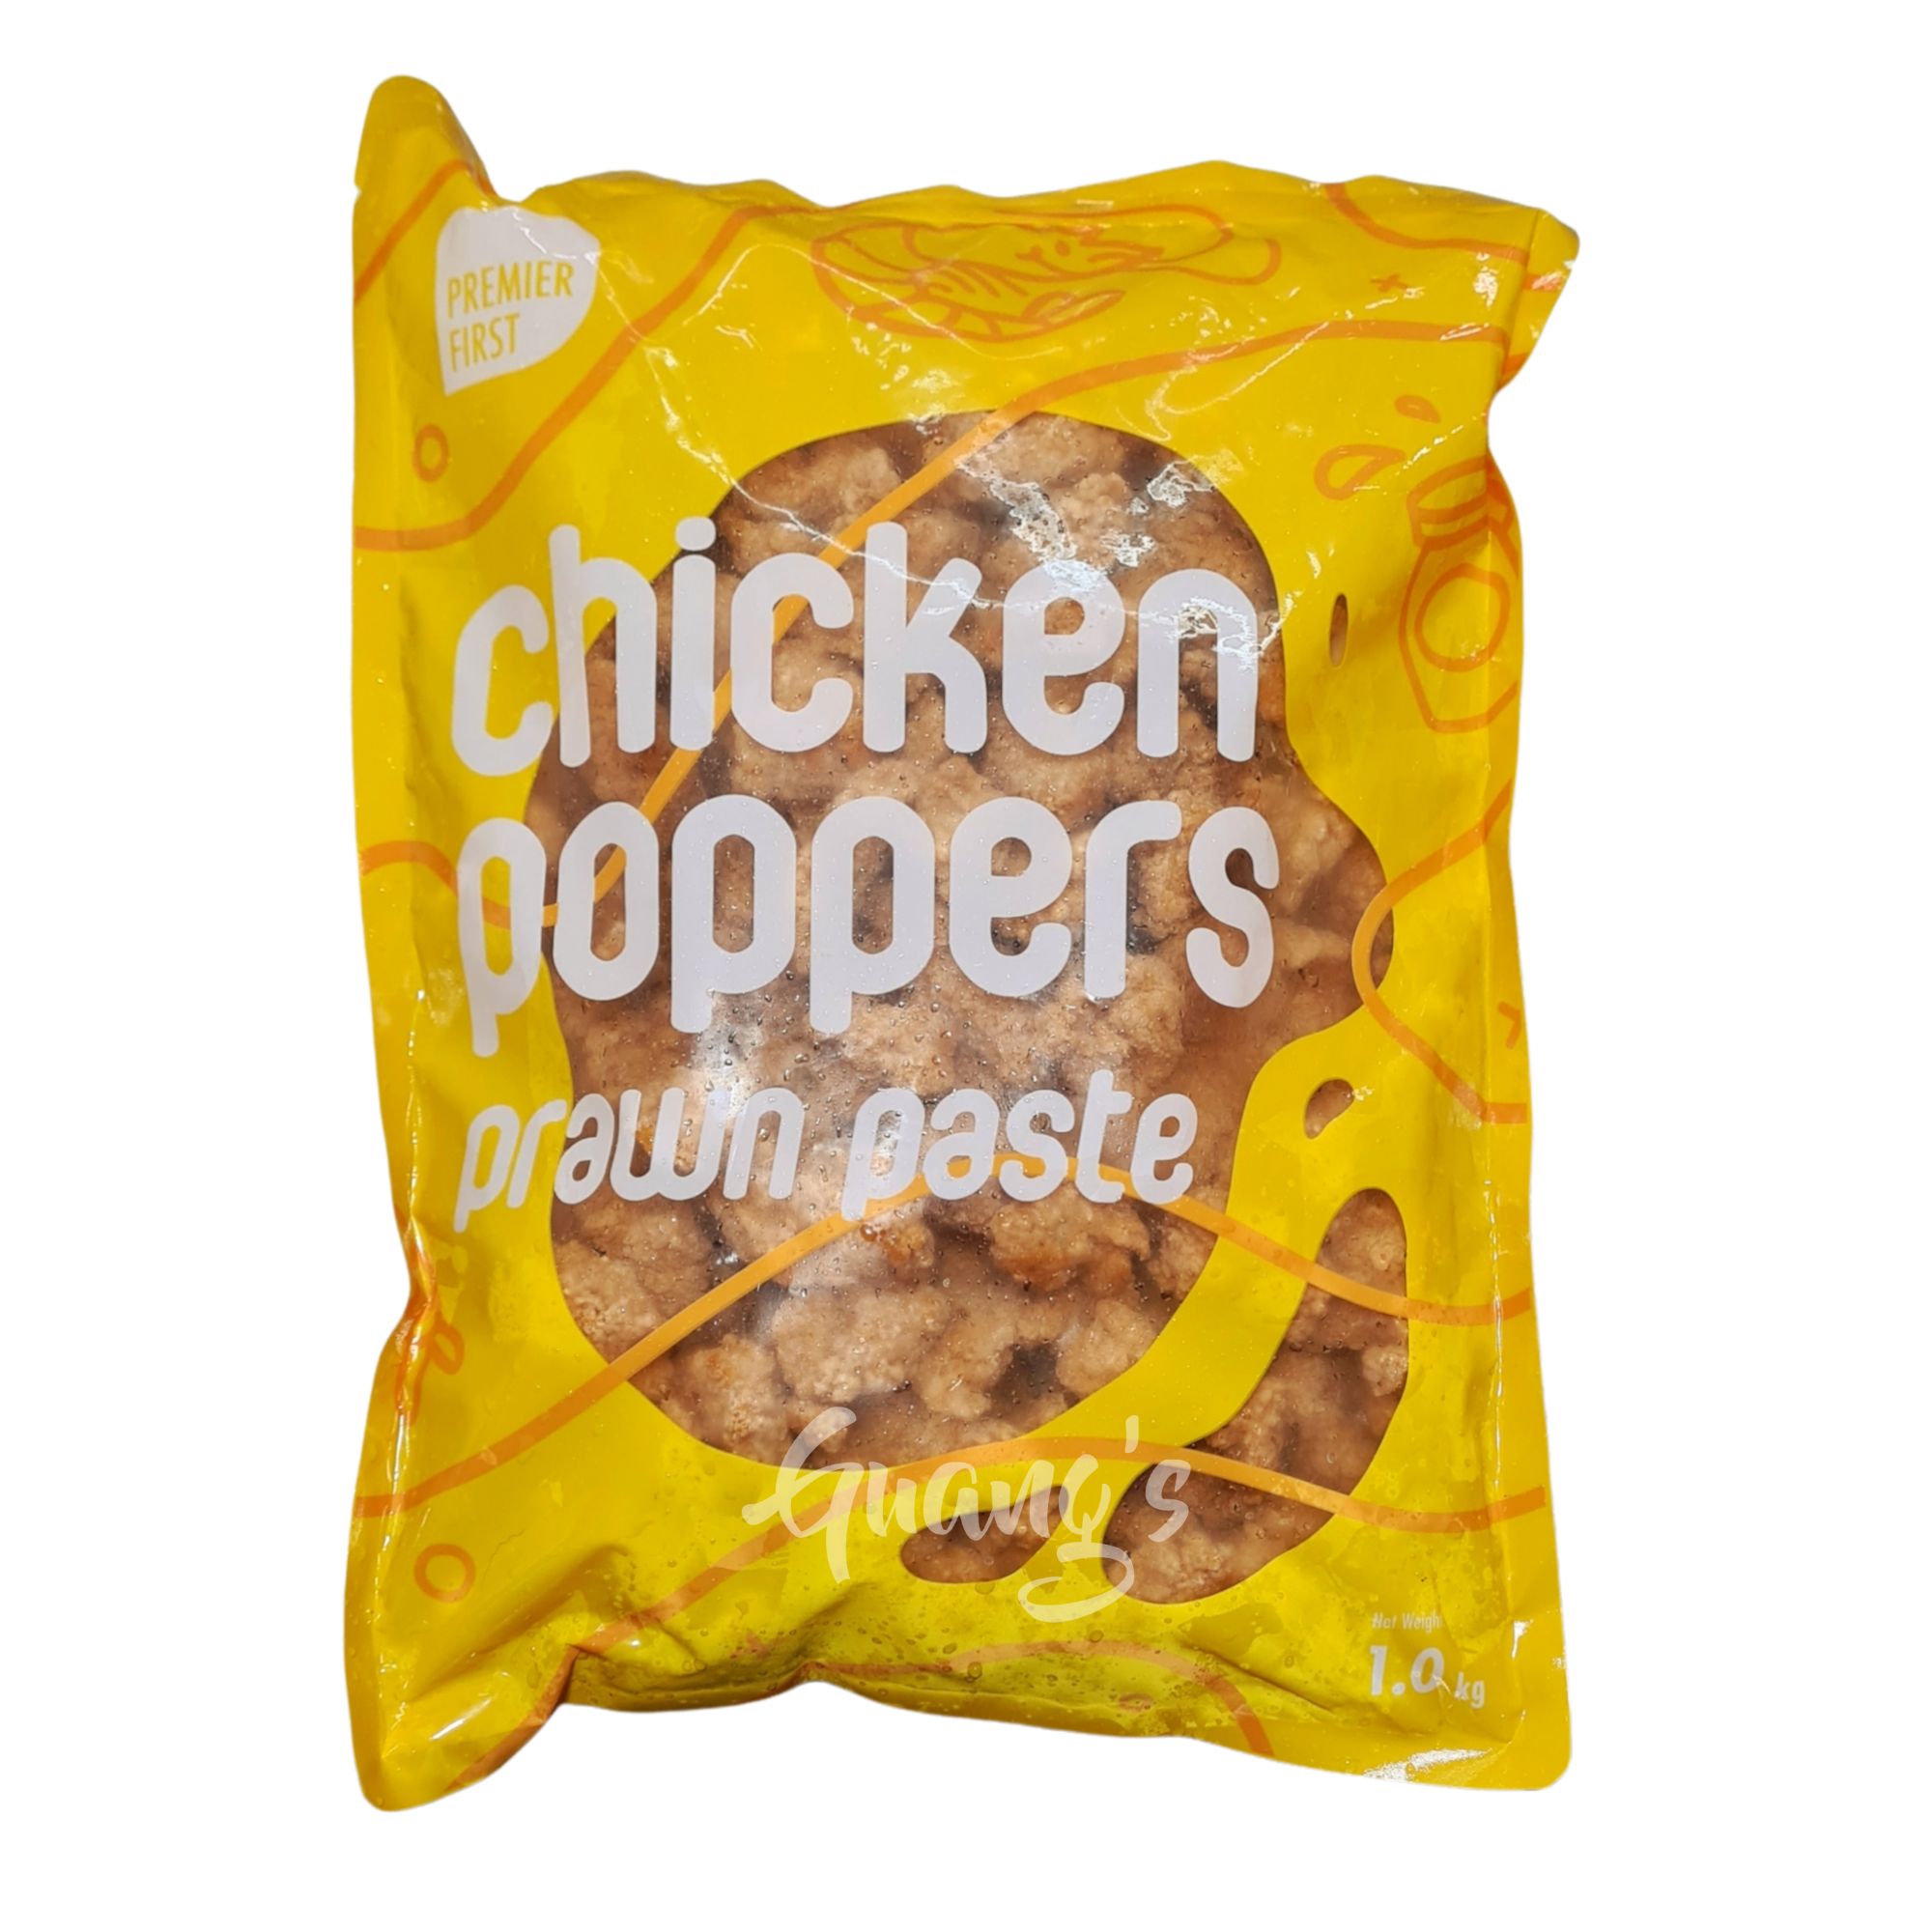 Premier First Chicken Poppers Prawn Paste (1kg)